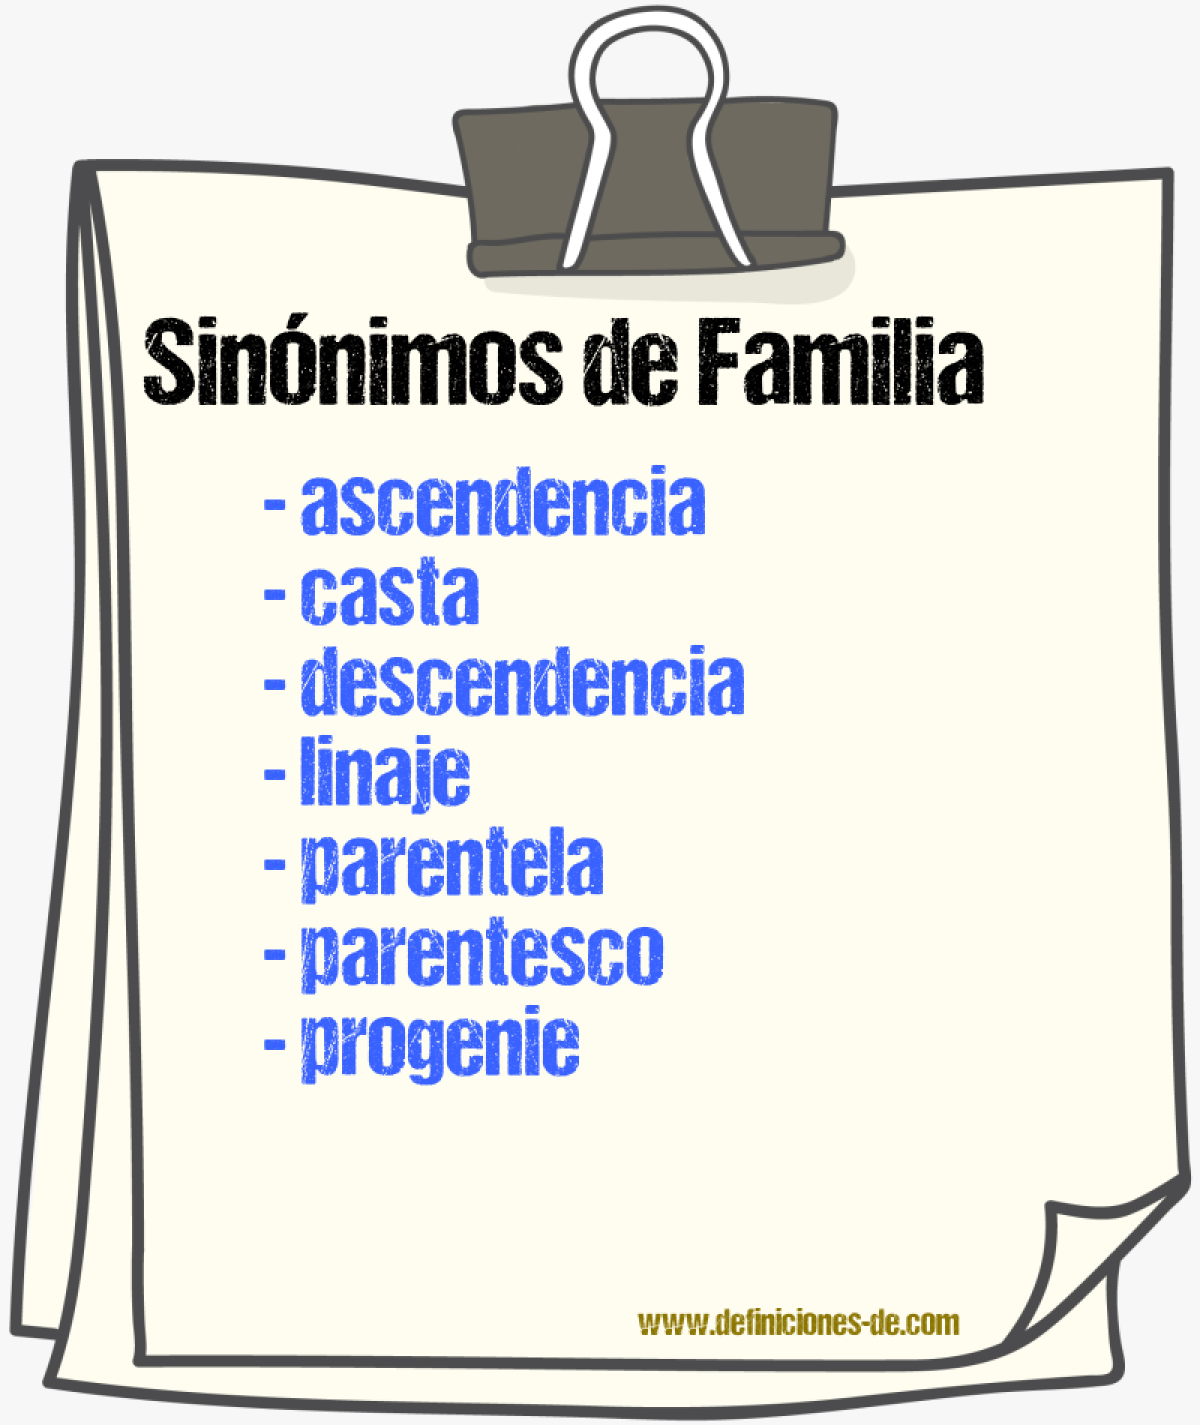 Sinónimos de familia